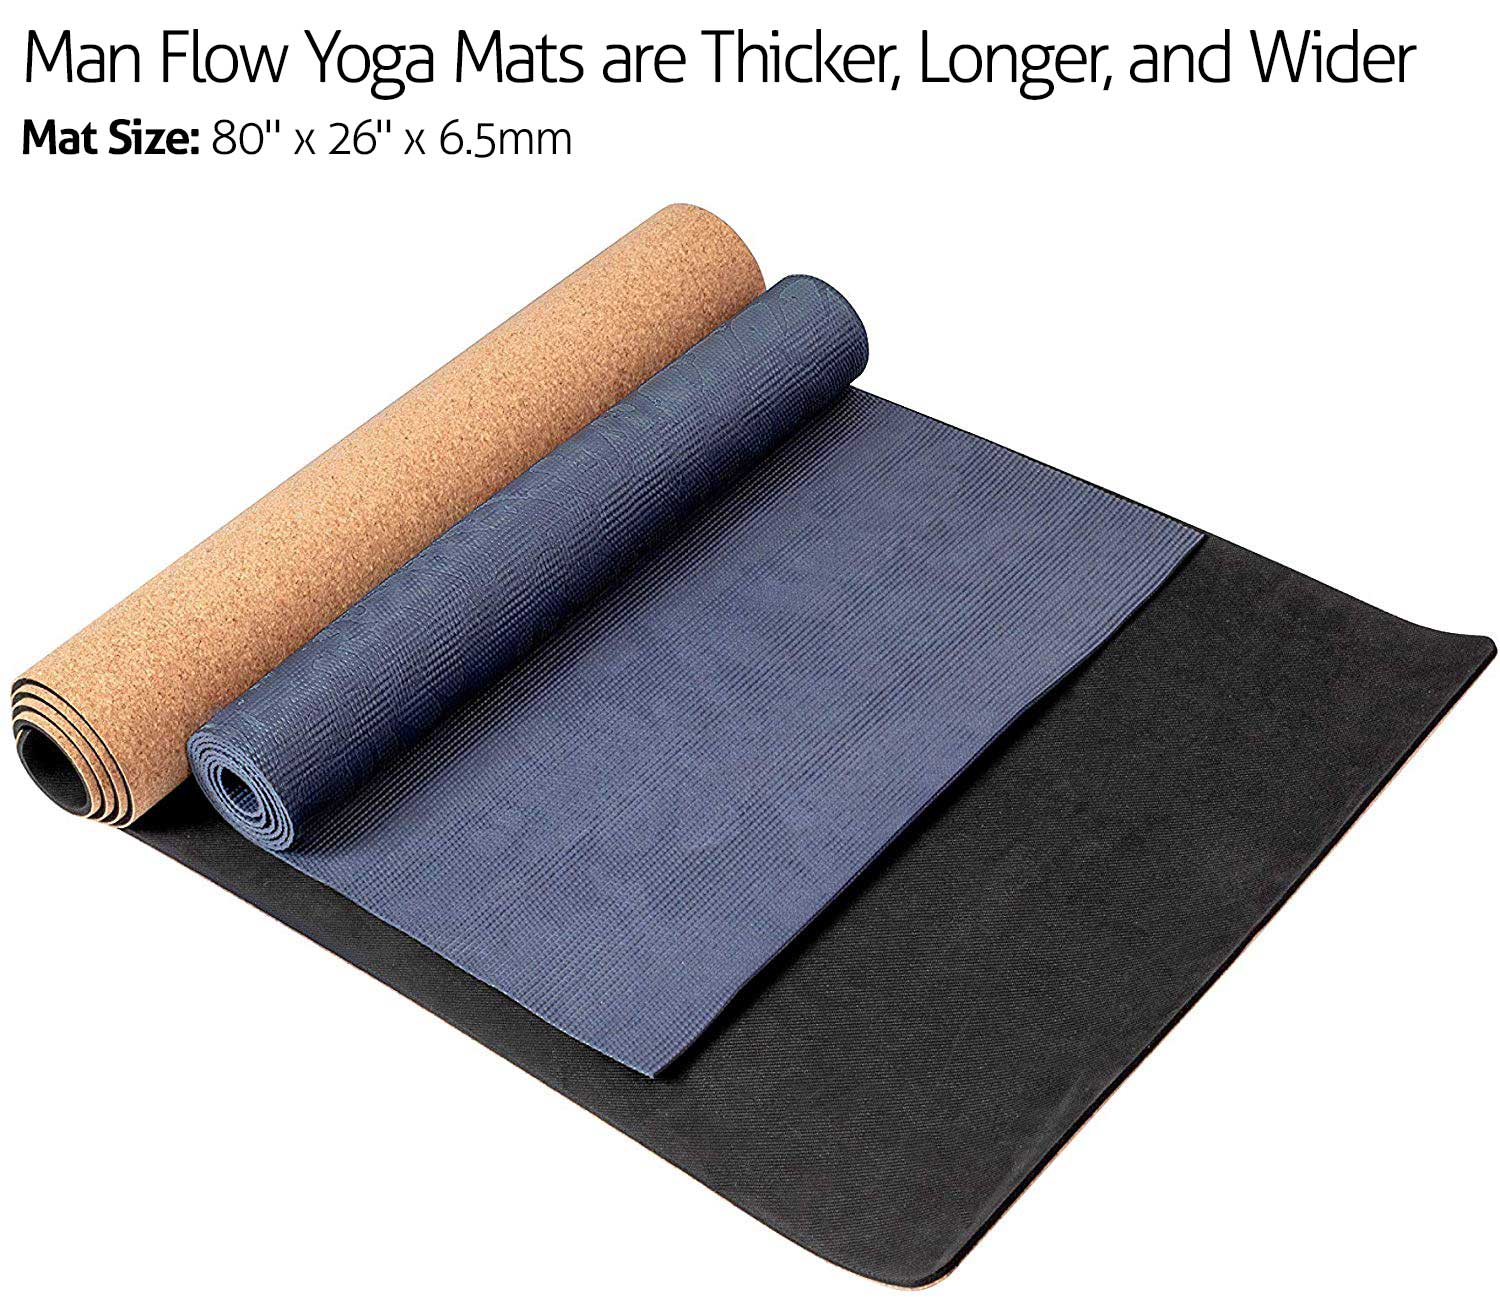 1 mm cork yoga mat